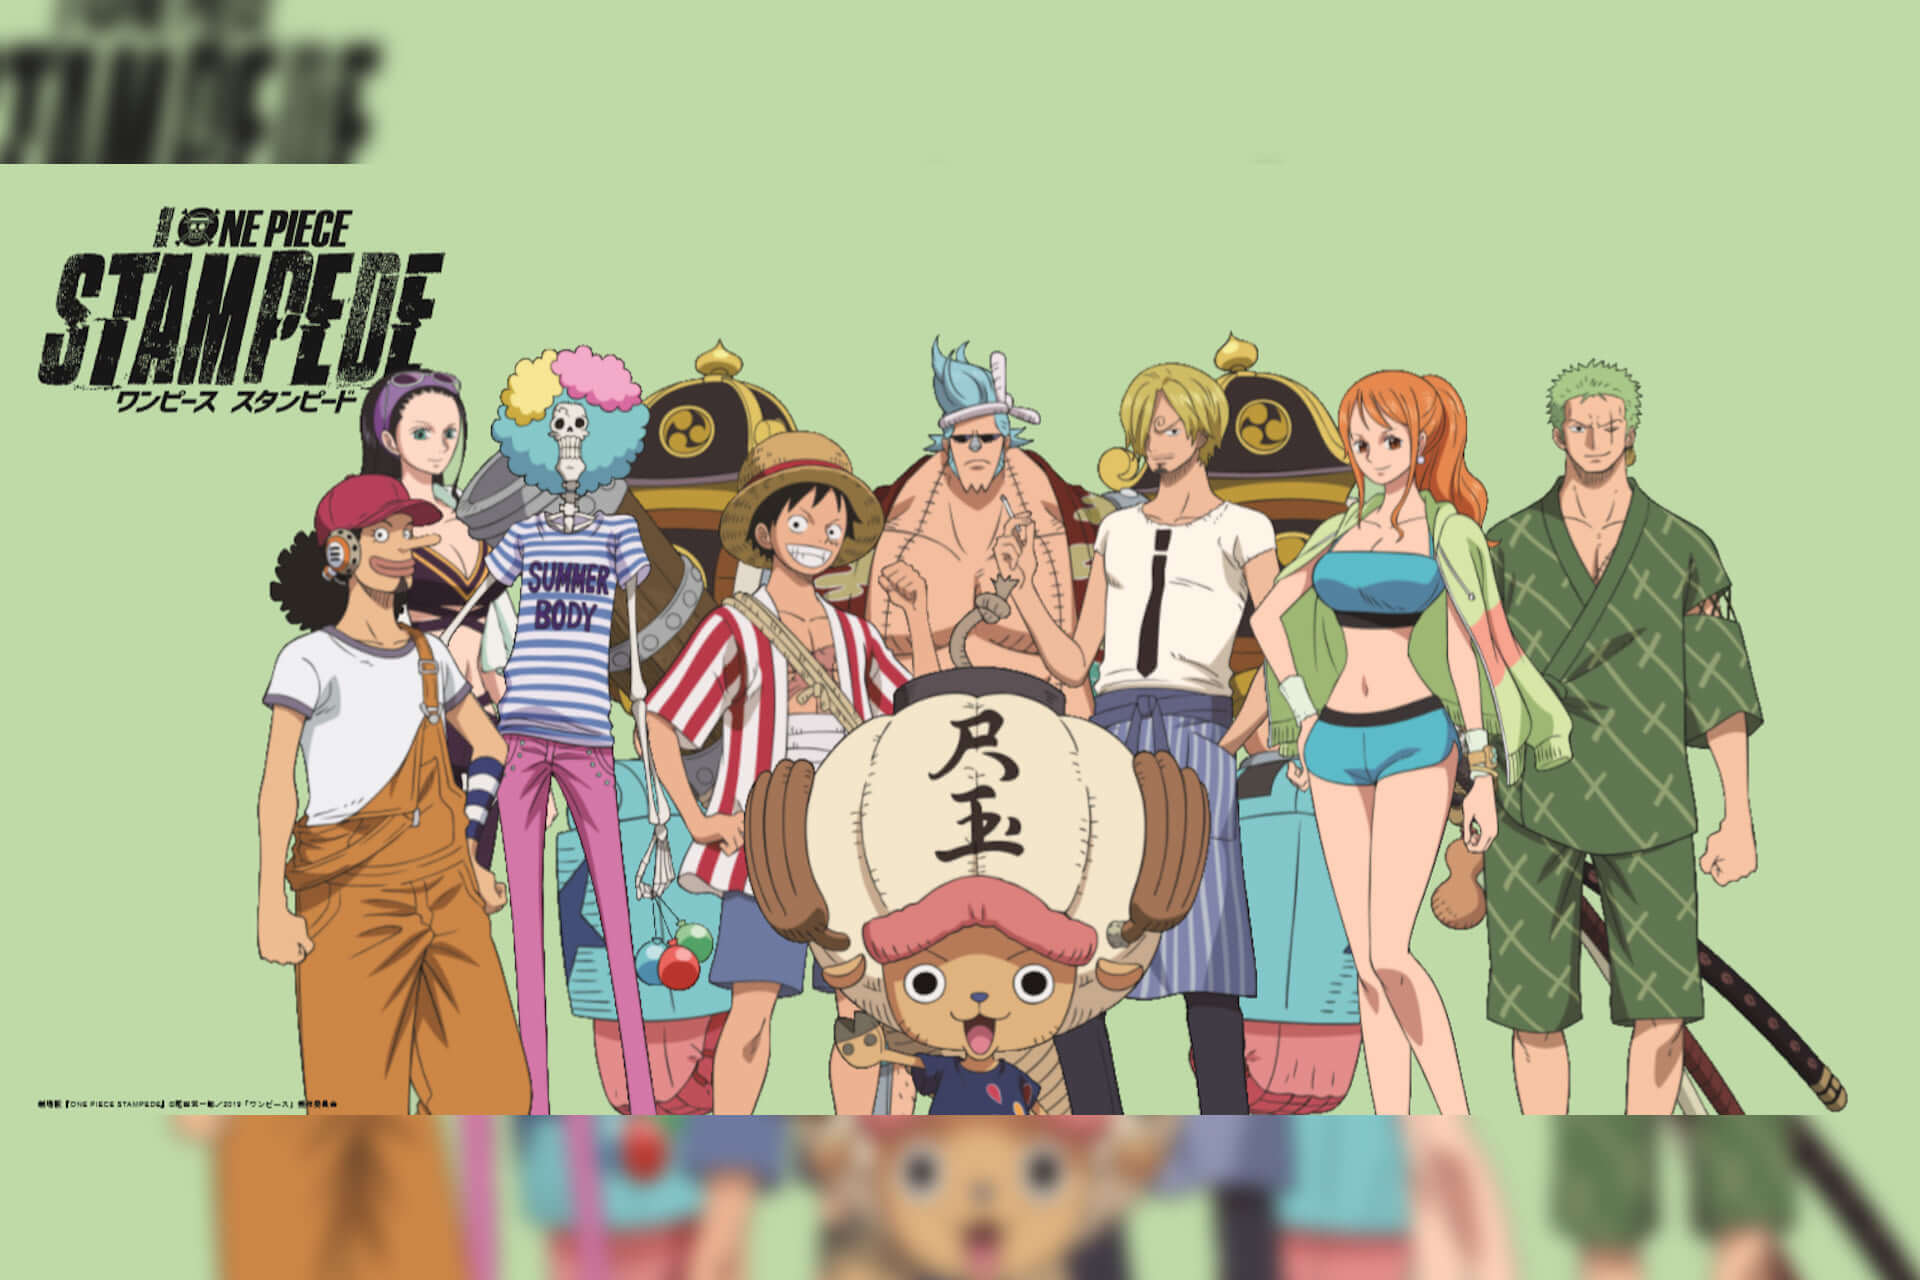 ユニクロとone Pieceの第2弾コラボが実現 Utに One Piece Stampede シリーズが登場 19年7月11日 エキサイトニュース